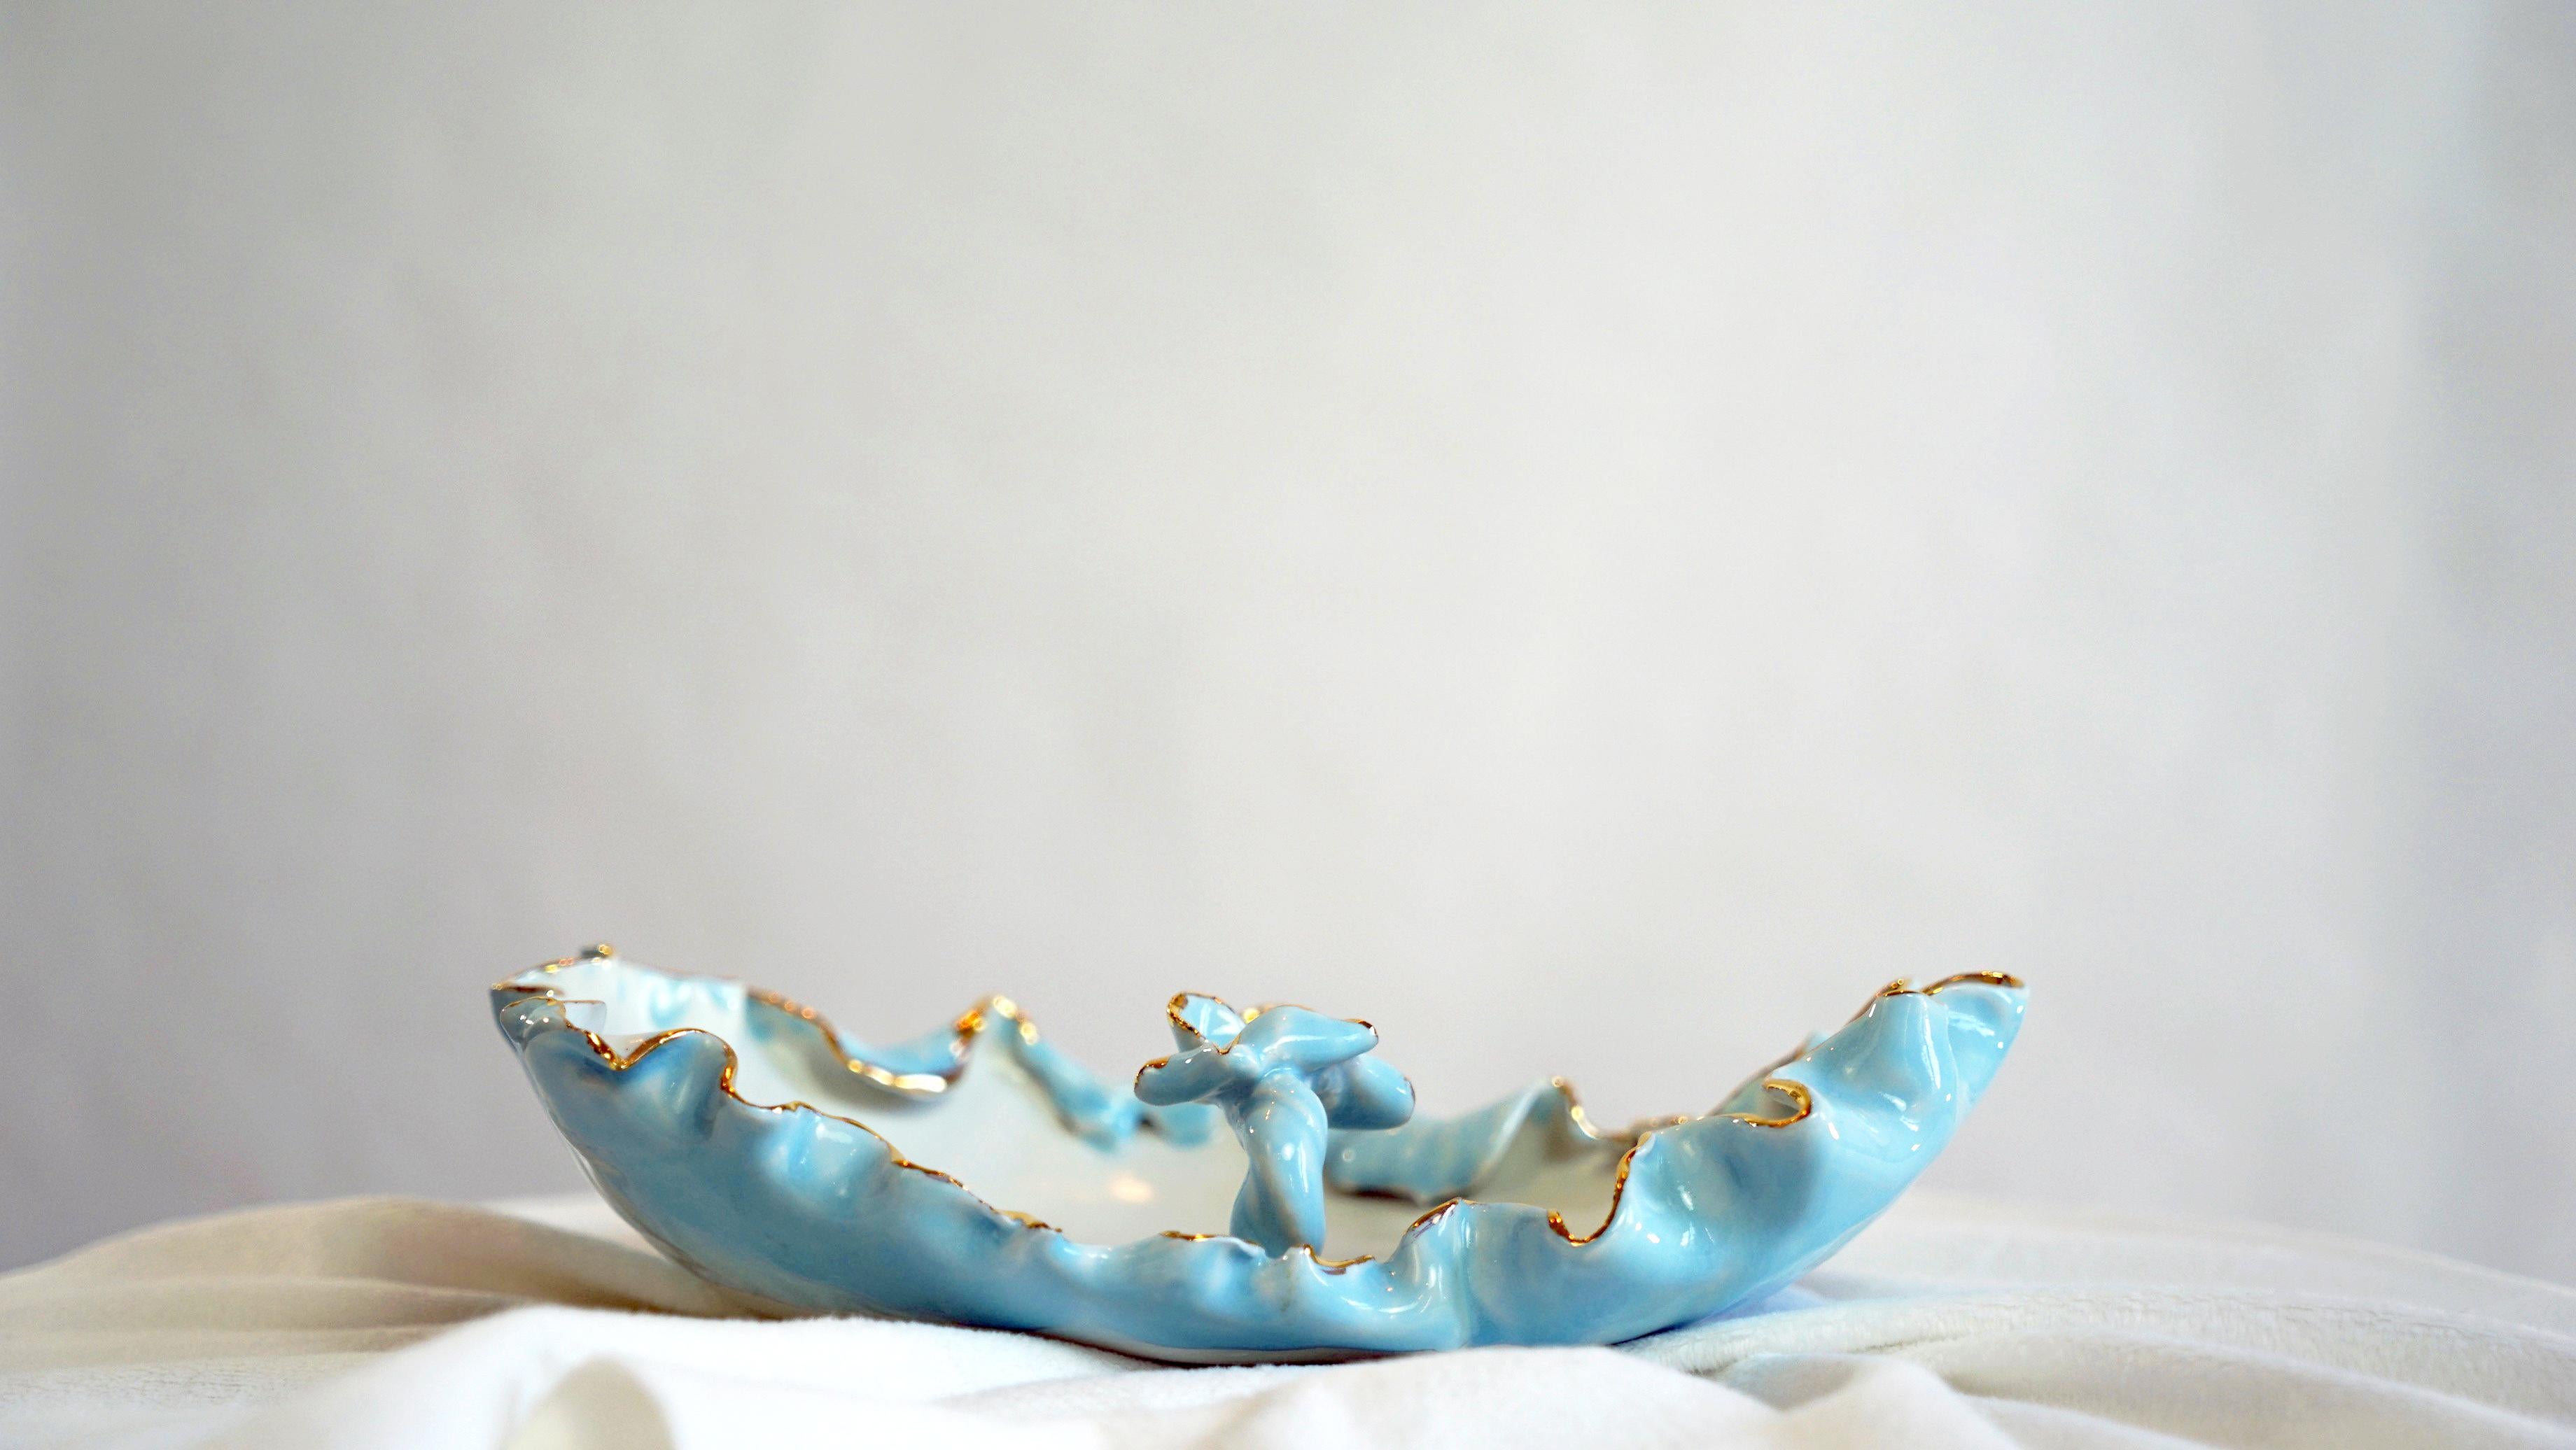 Dies ist ein nummeriertes Stück aus feinem Porzellan, entworfen und handgefertigt von der Künstlerin und Designerin Hania Jneid. Einzigartiges Stück, handglasiert und mit Goldglanz verziert. Sie ist sowohl funktional als auch skulptural. Es ist eine